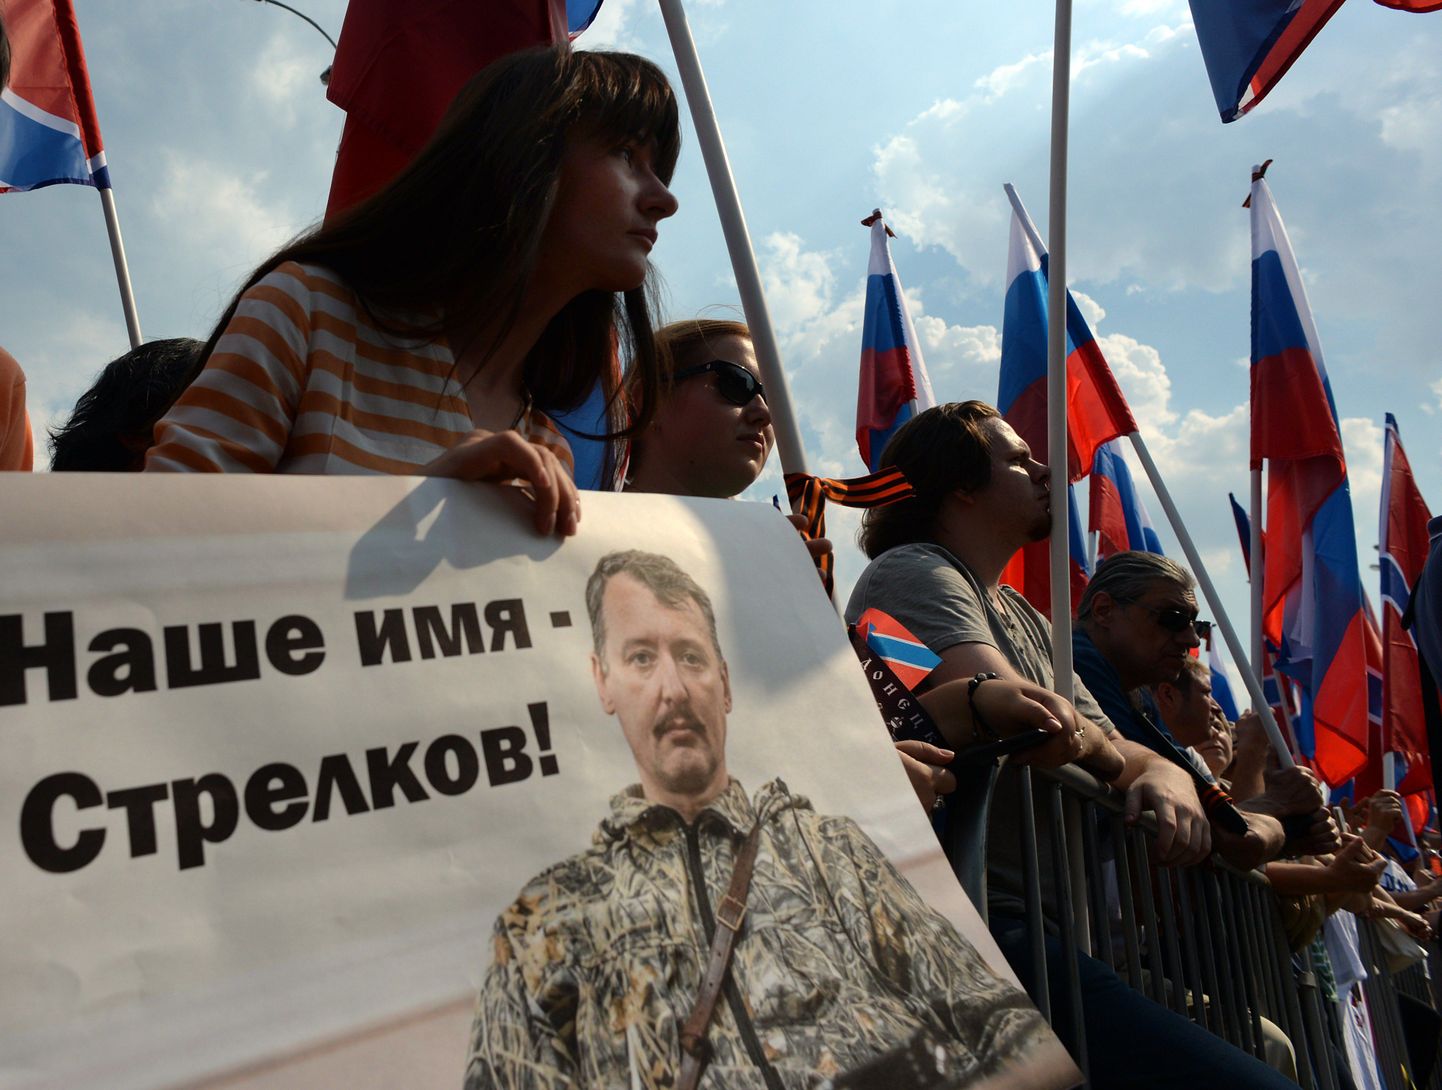 2 августа в Москве прошла акция в поддержку действий сепаратистов на Украине. На фото - плакат с фотографией Игоря Стрелкова.